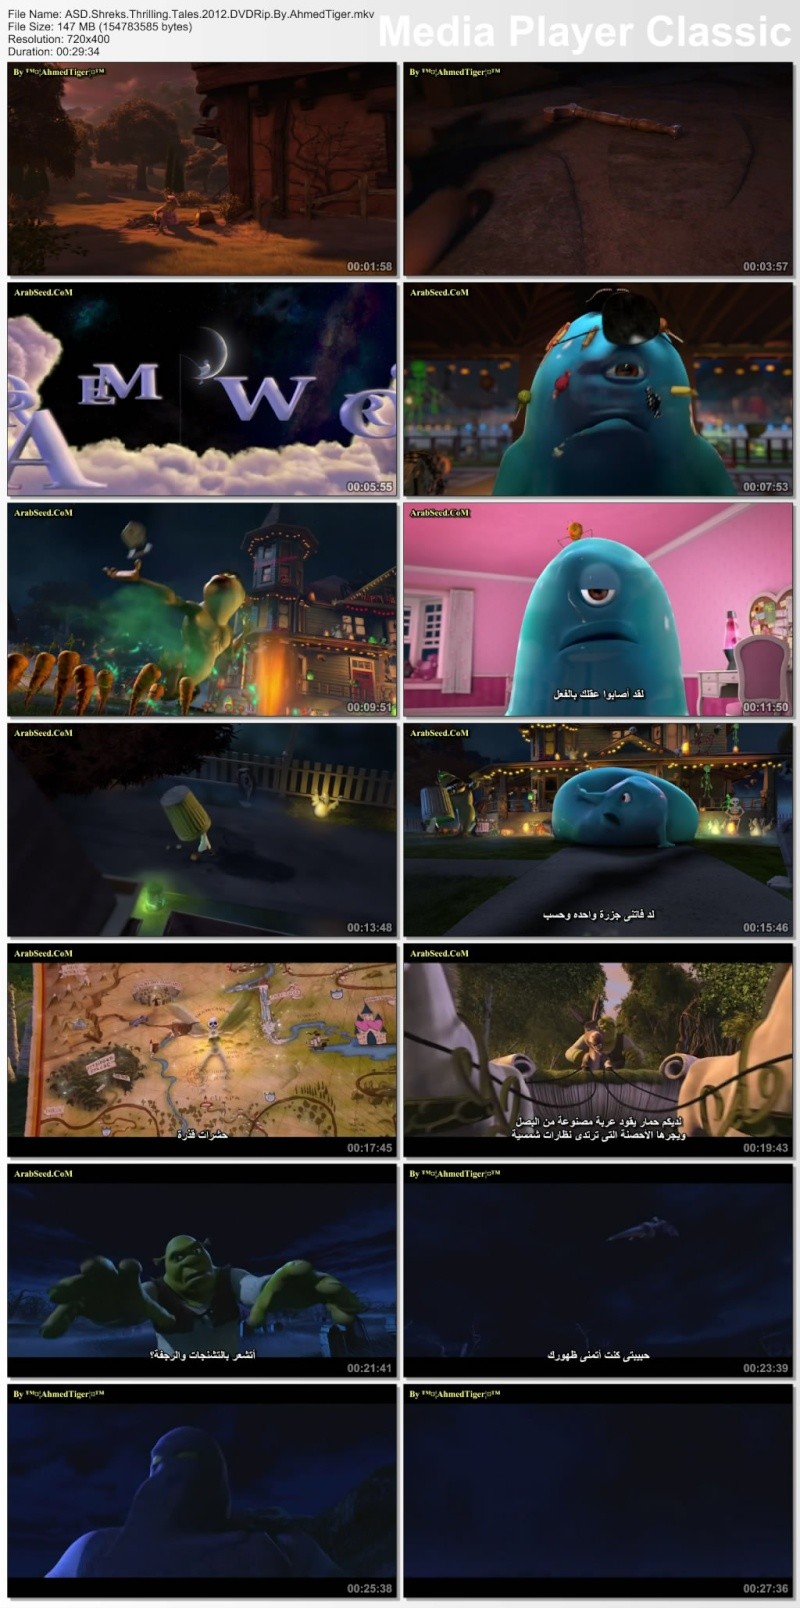 فيلم الانمى الرائع Shreks Thrilling Tales 2012 نسخه DVDRip مترجم Asd_sh10